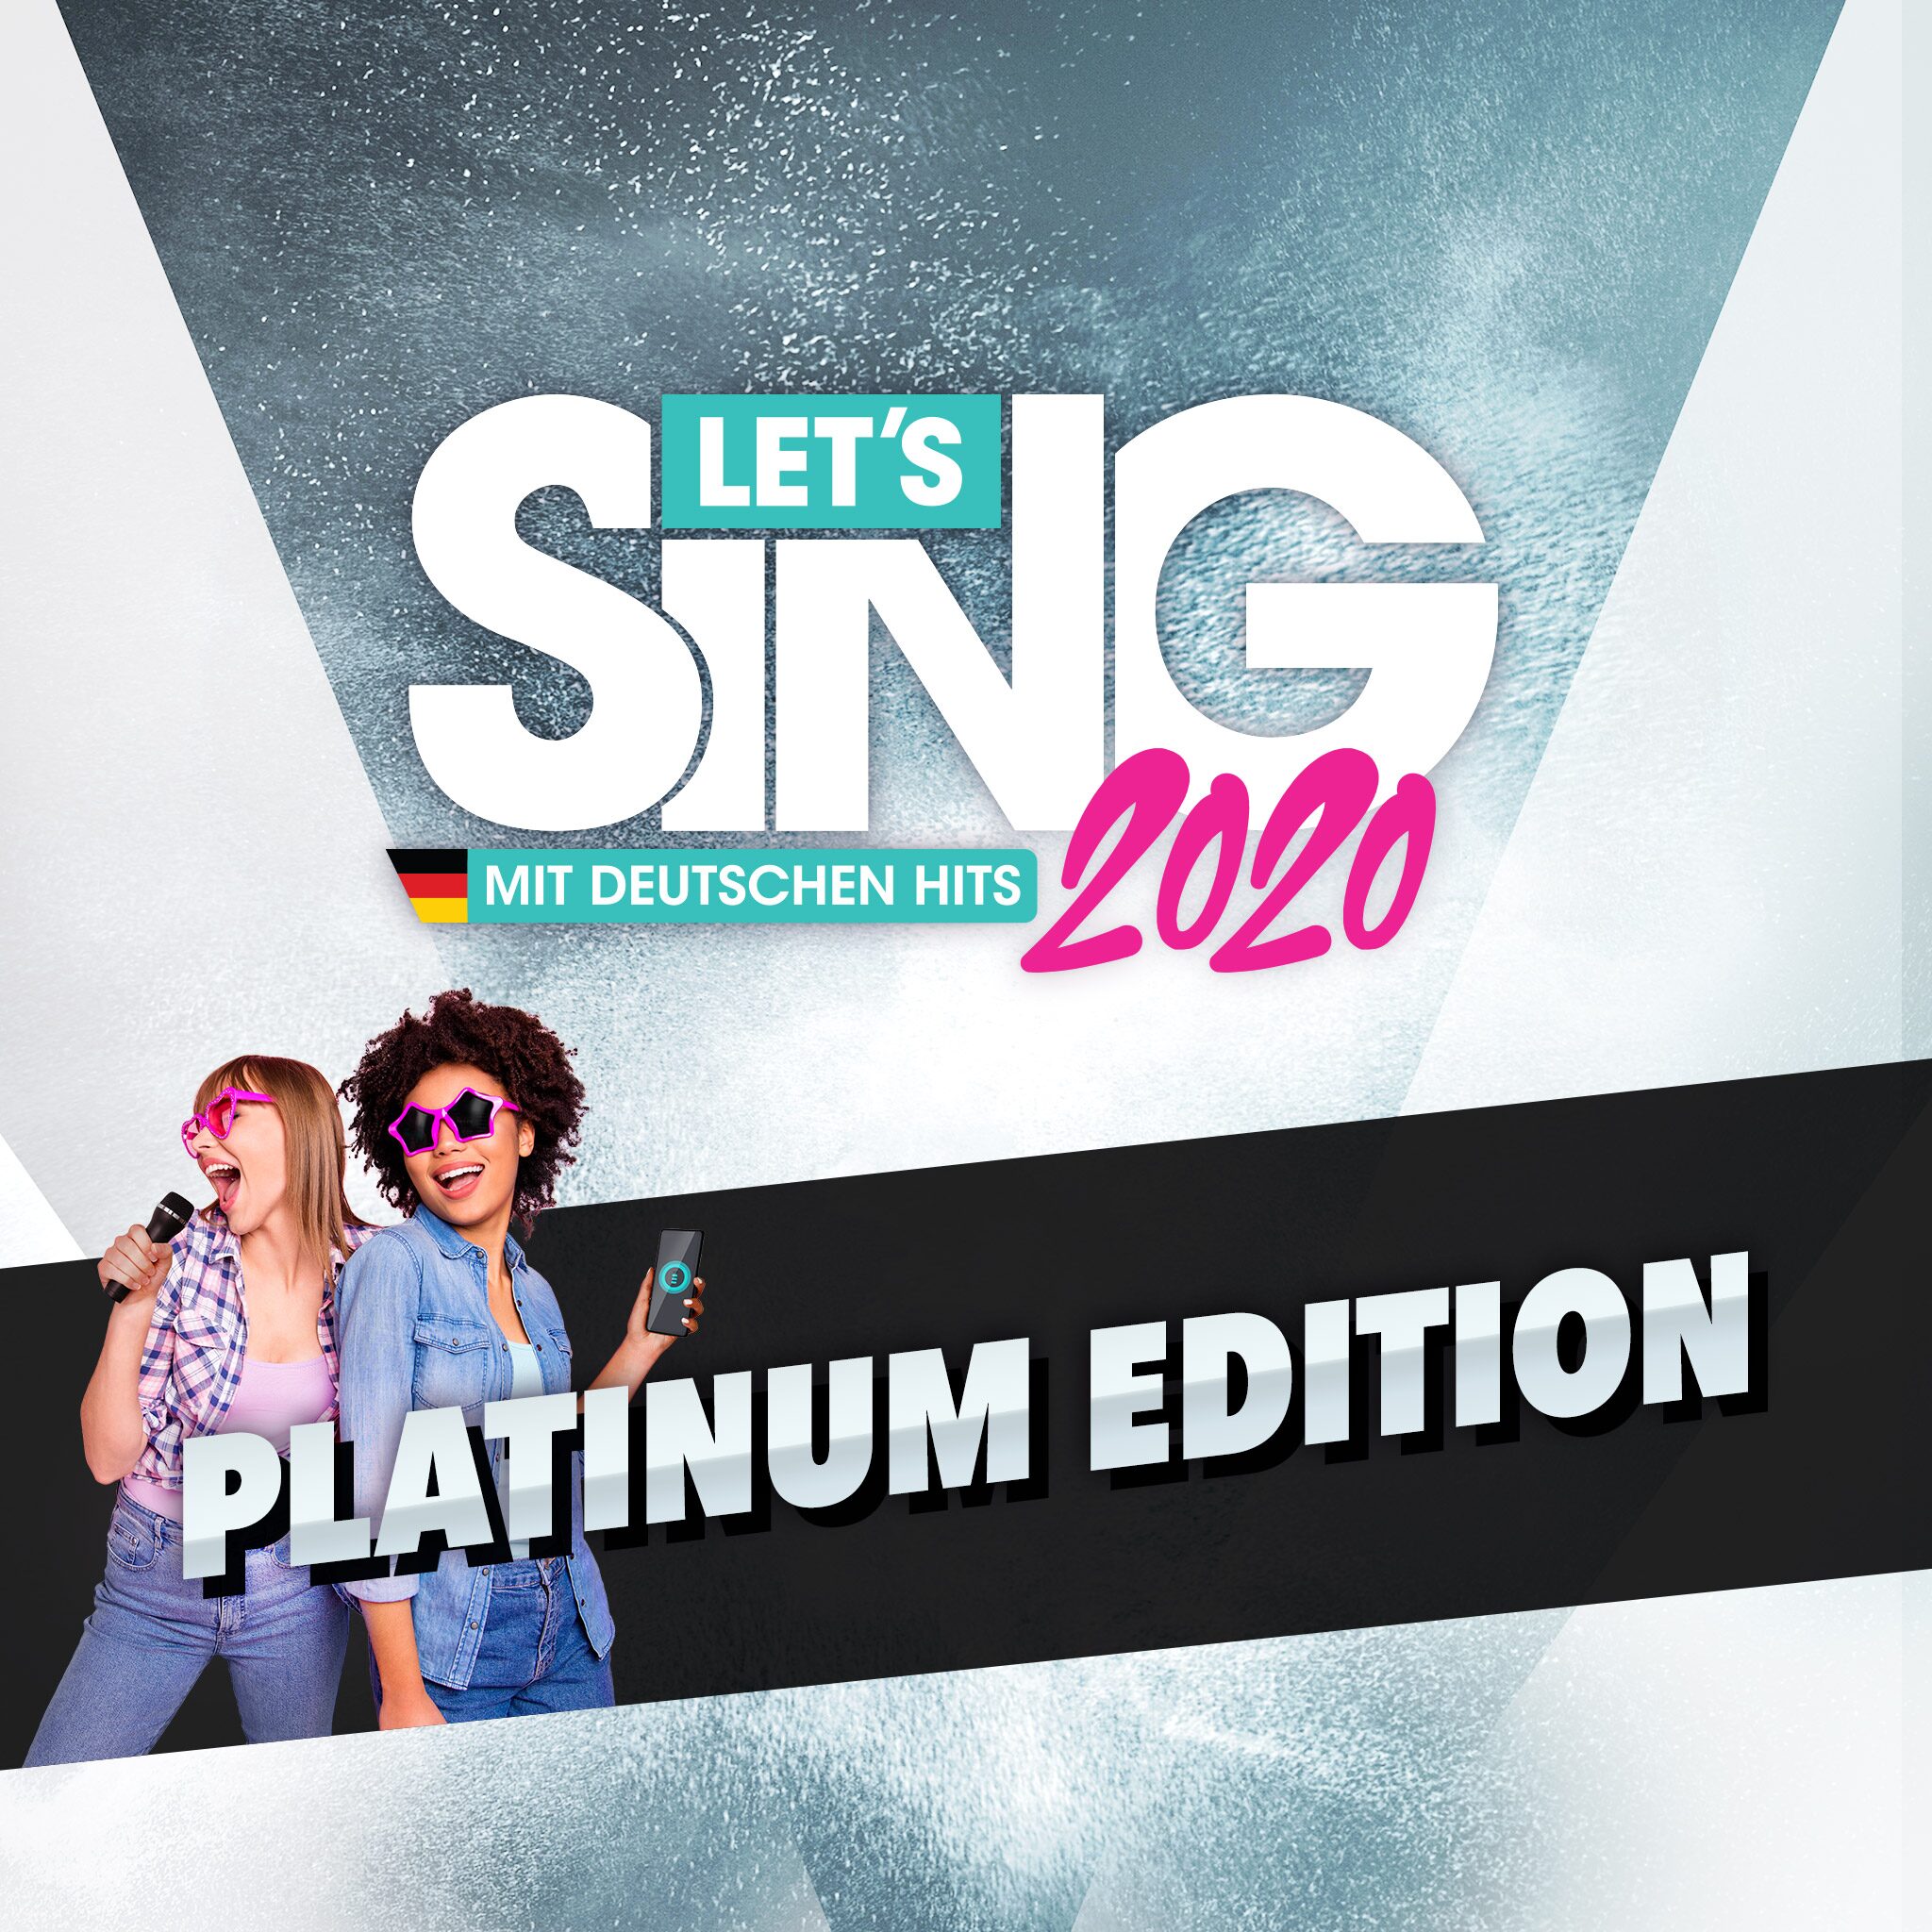 Let’s Sing 2020 mit deutschen Hits - Platinum Edition